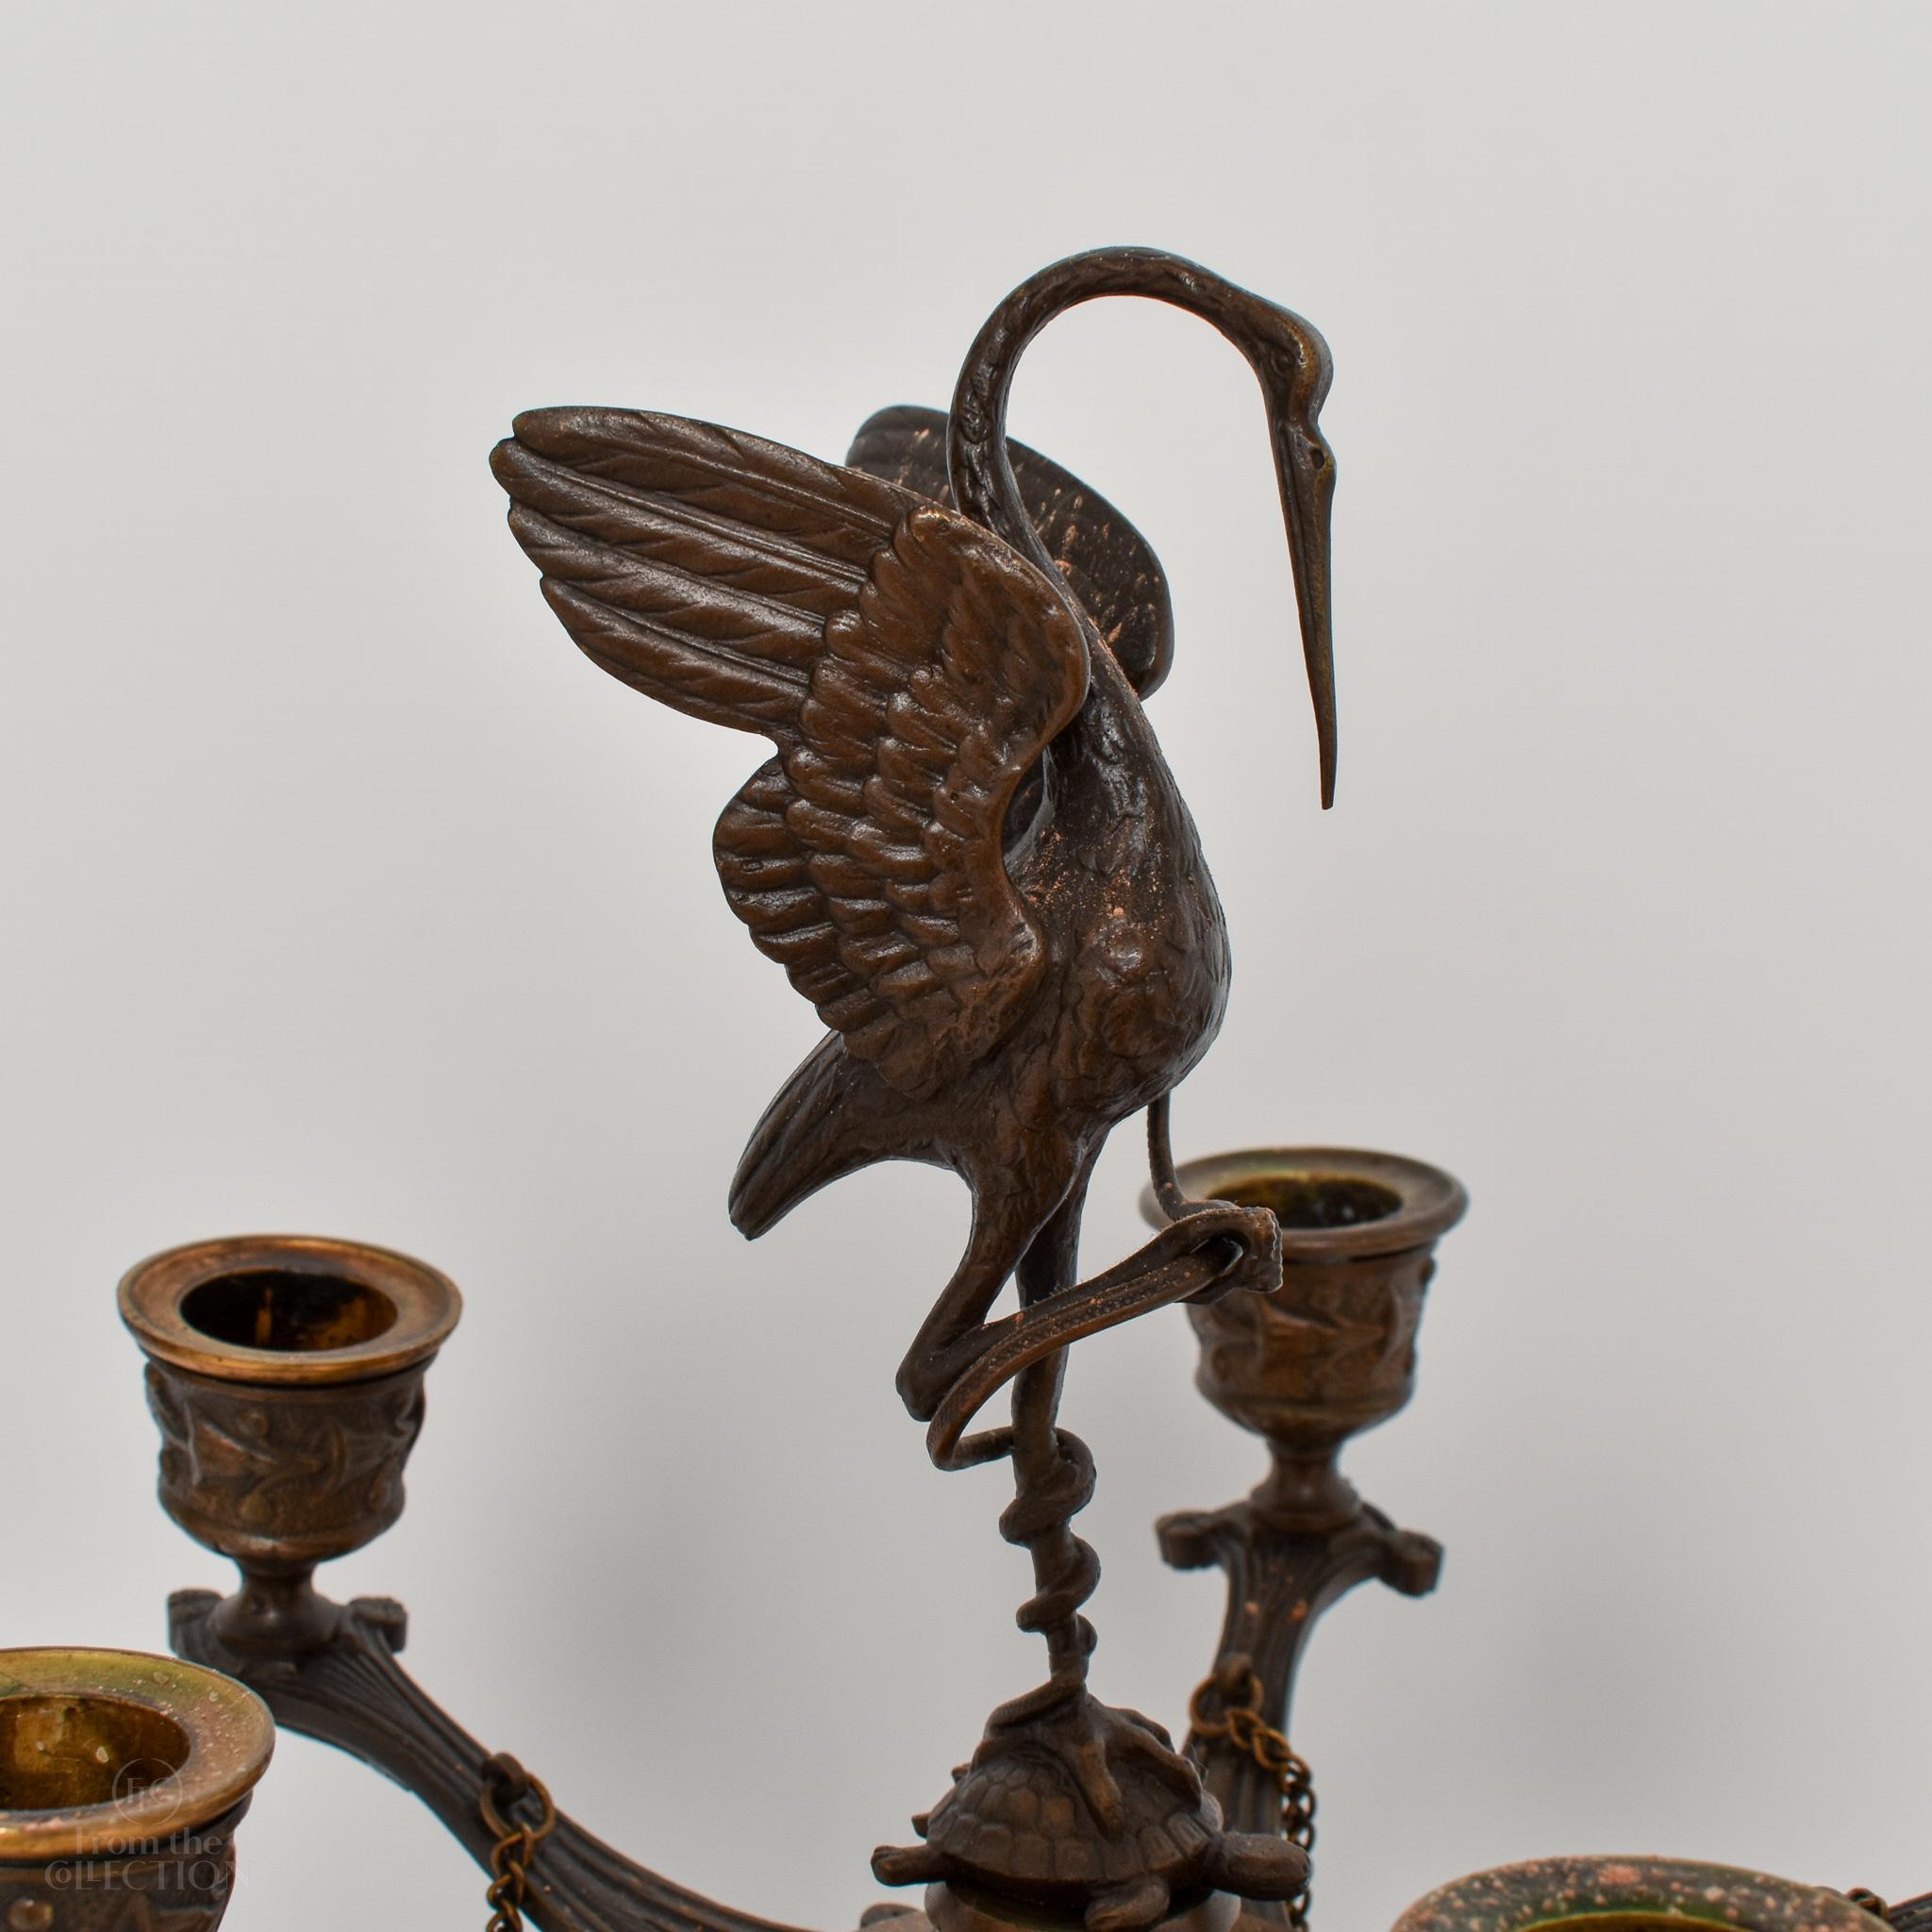 Paar schöne bronzene Kranichkandelaber aus der Regency-Zeit um 1820. Der Kranich auf dem Paar ist wunderschön detailliert. Es gibt Füße, auf denen sie stehen können. Ein prächtiges Paar. Diese wunderschön dekorierten Kandelaber sind eine